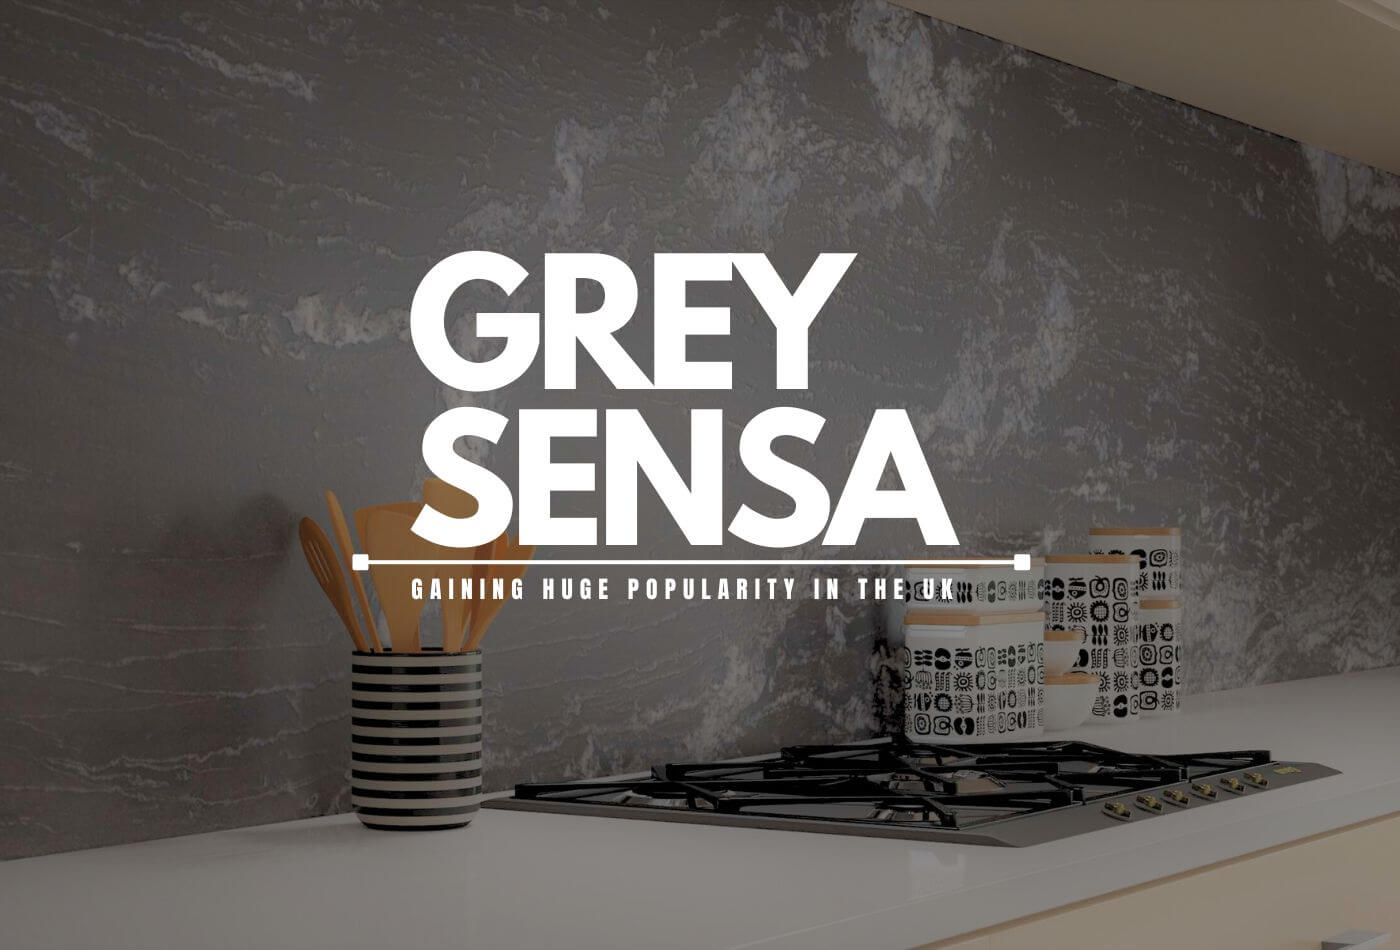 Grey Sensa: Gaining Huge Popularity In The UK